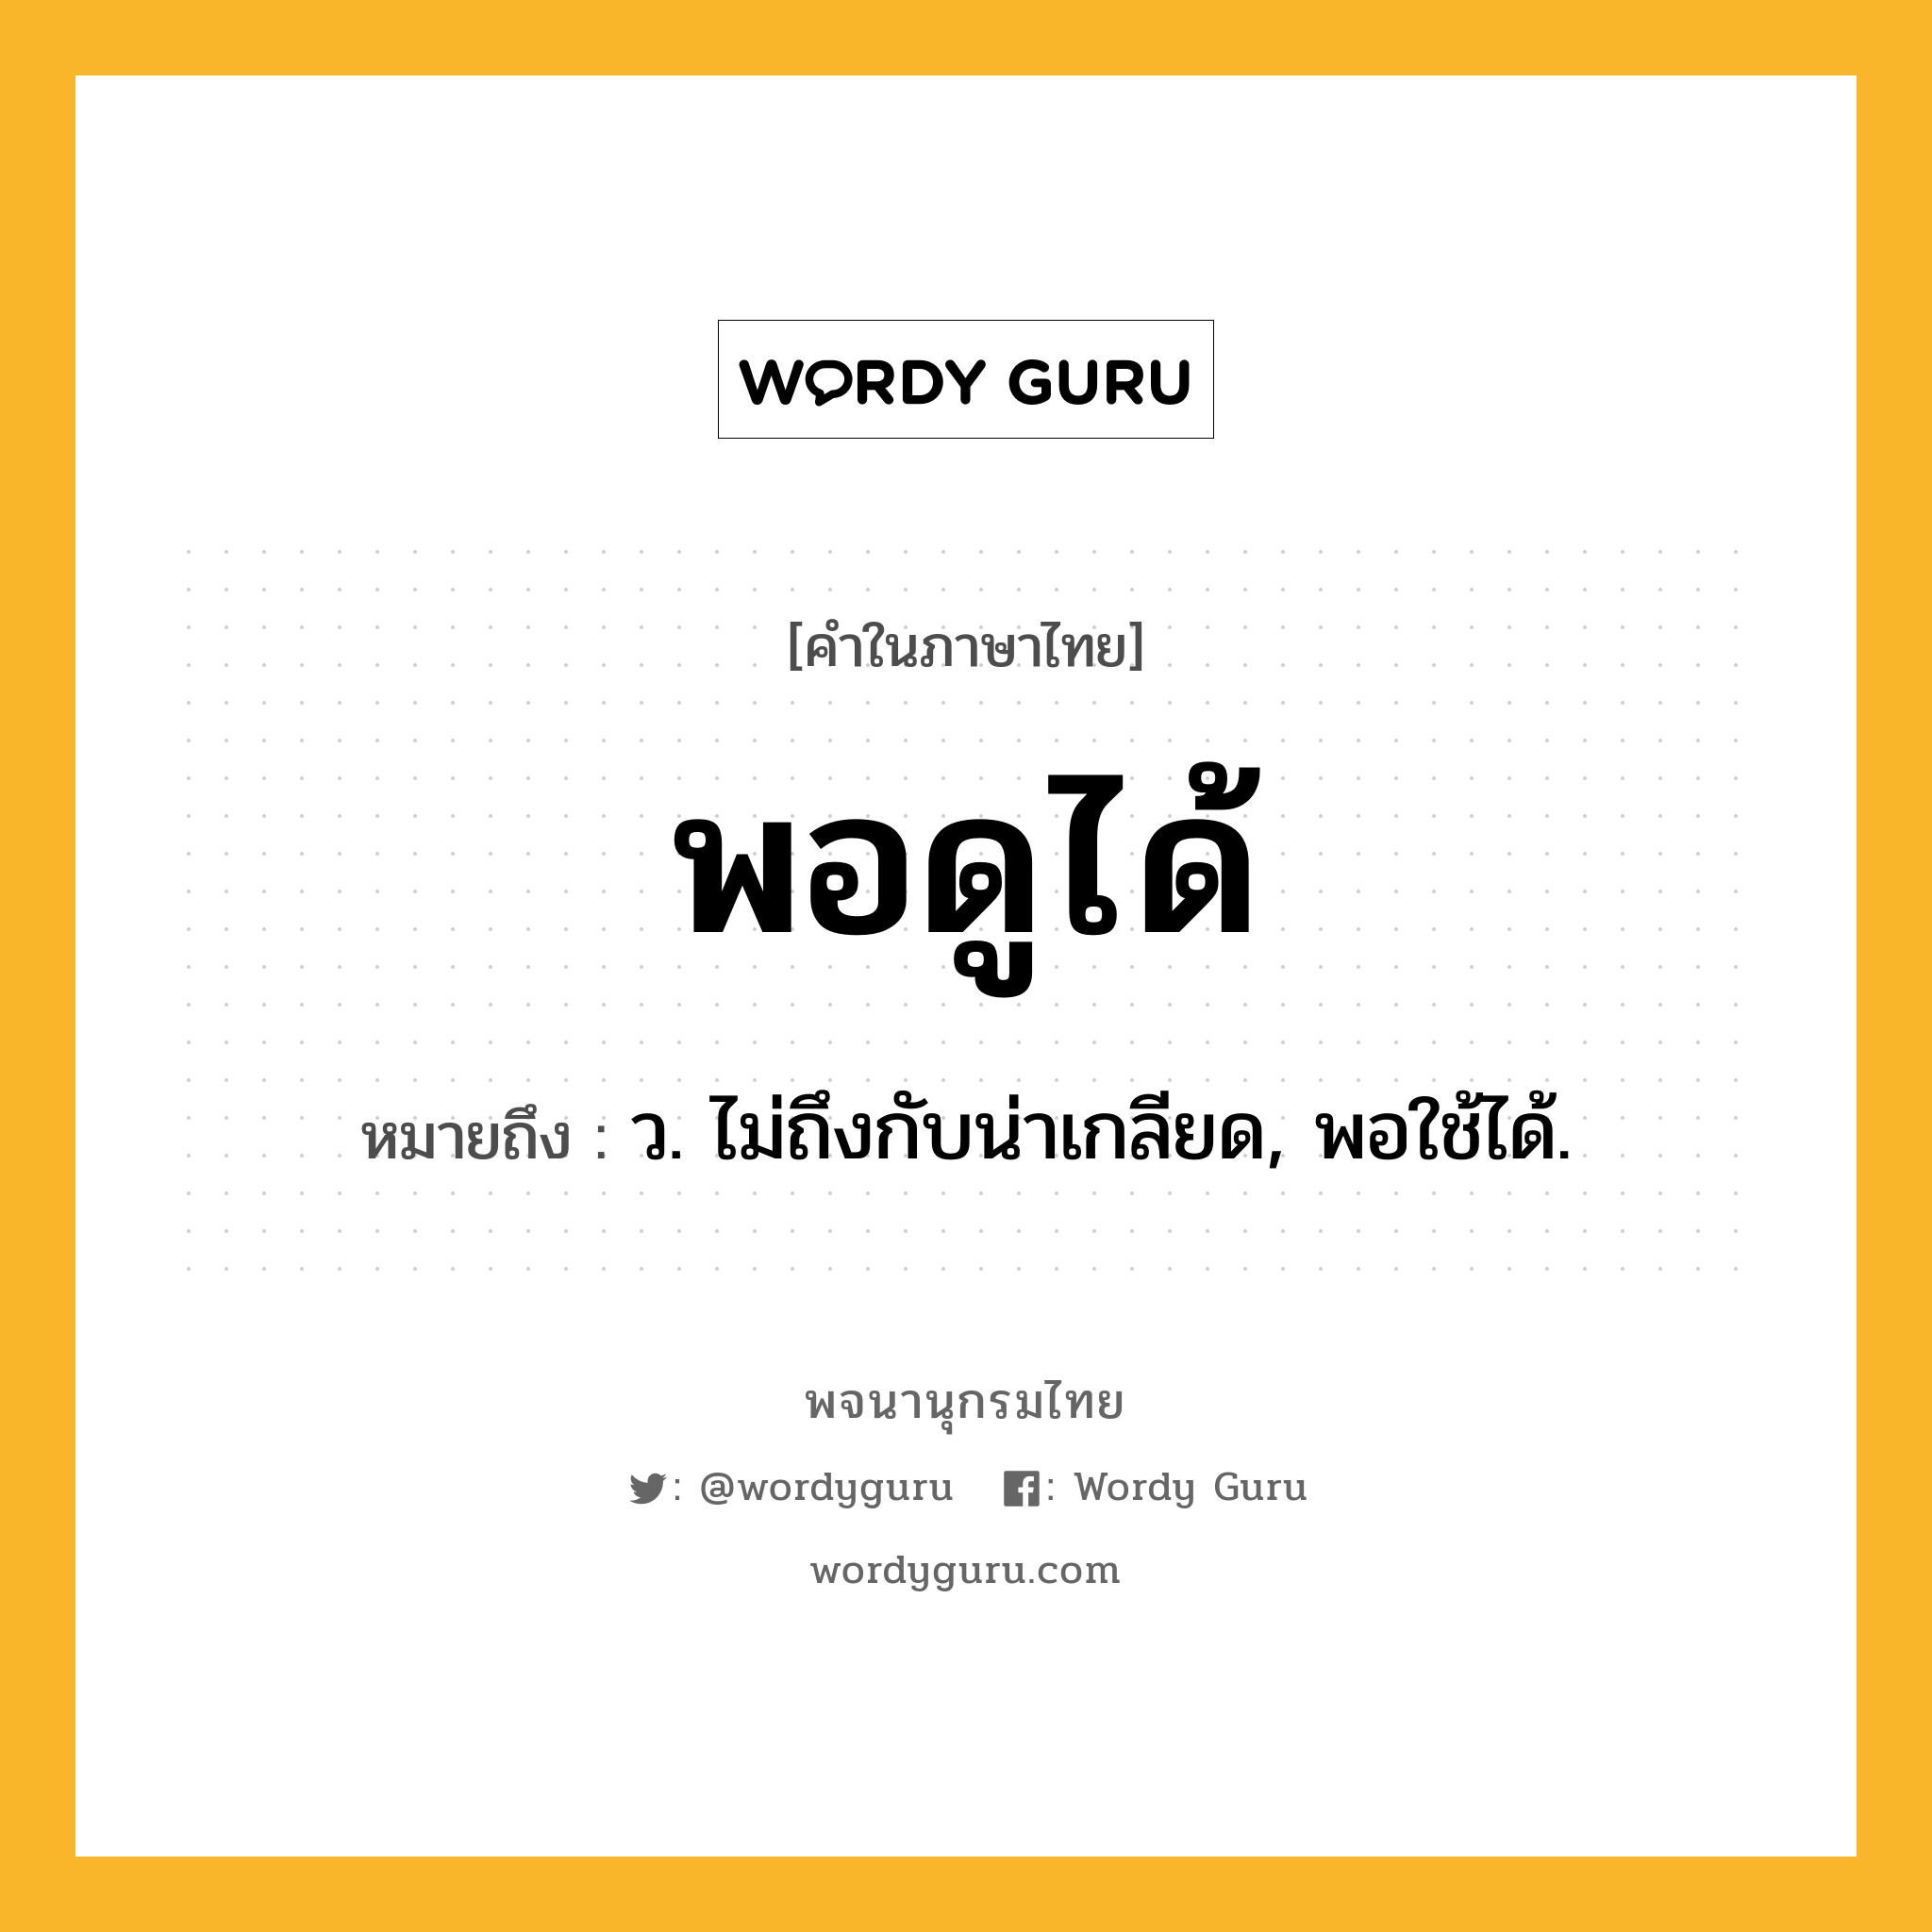 พอดูได้ ความหมาย หมายถึงอะไร?, คำในภาษาไทย พอดูได้ หมายถึง ว. ไม่ถึงกับน่าเกลียด, พอใช้ได้.